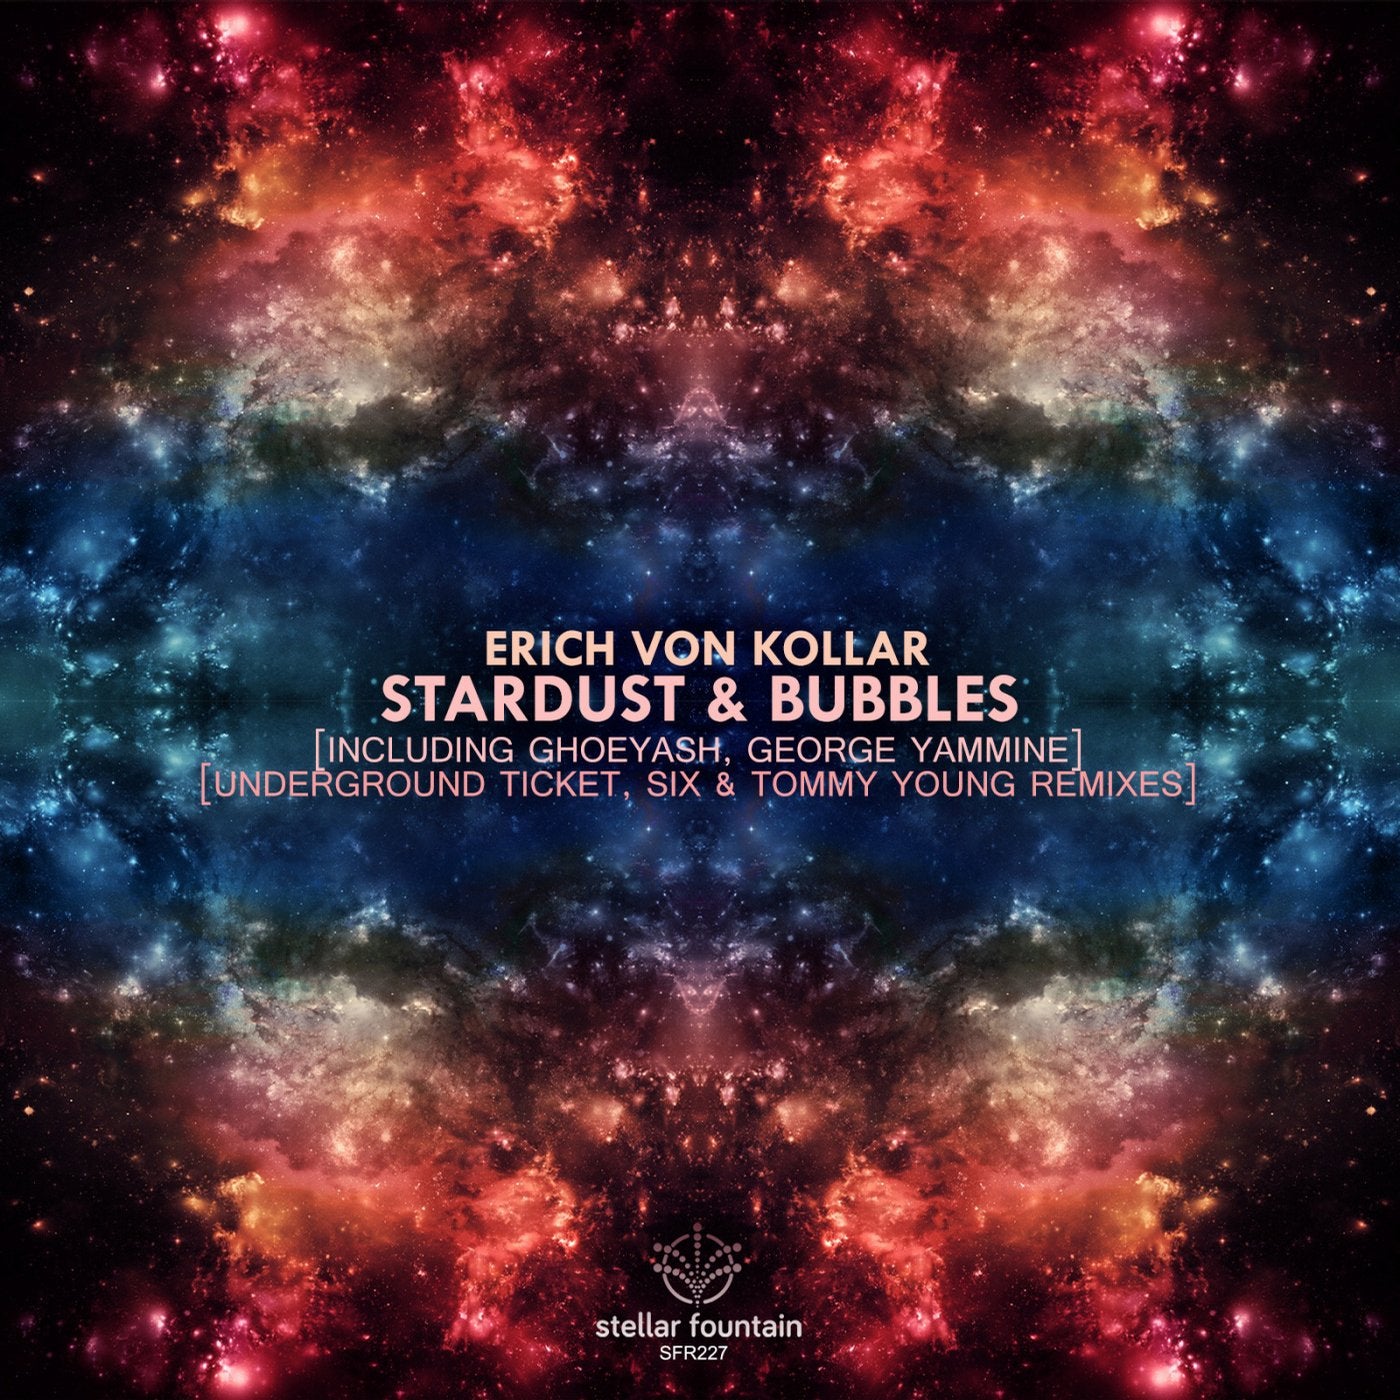 Stardust & Bubbles